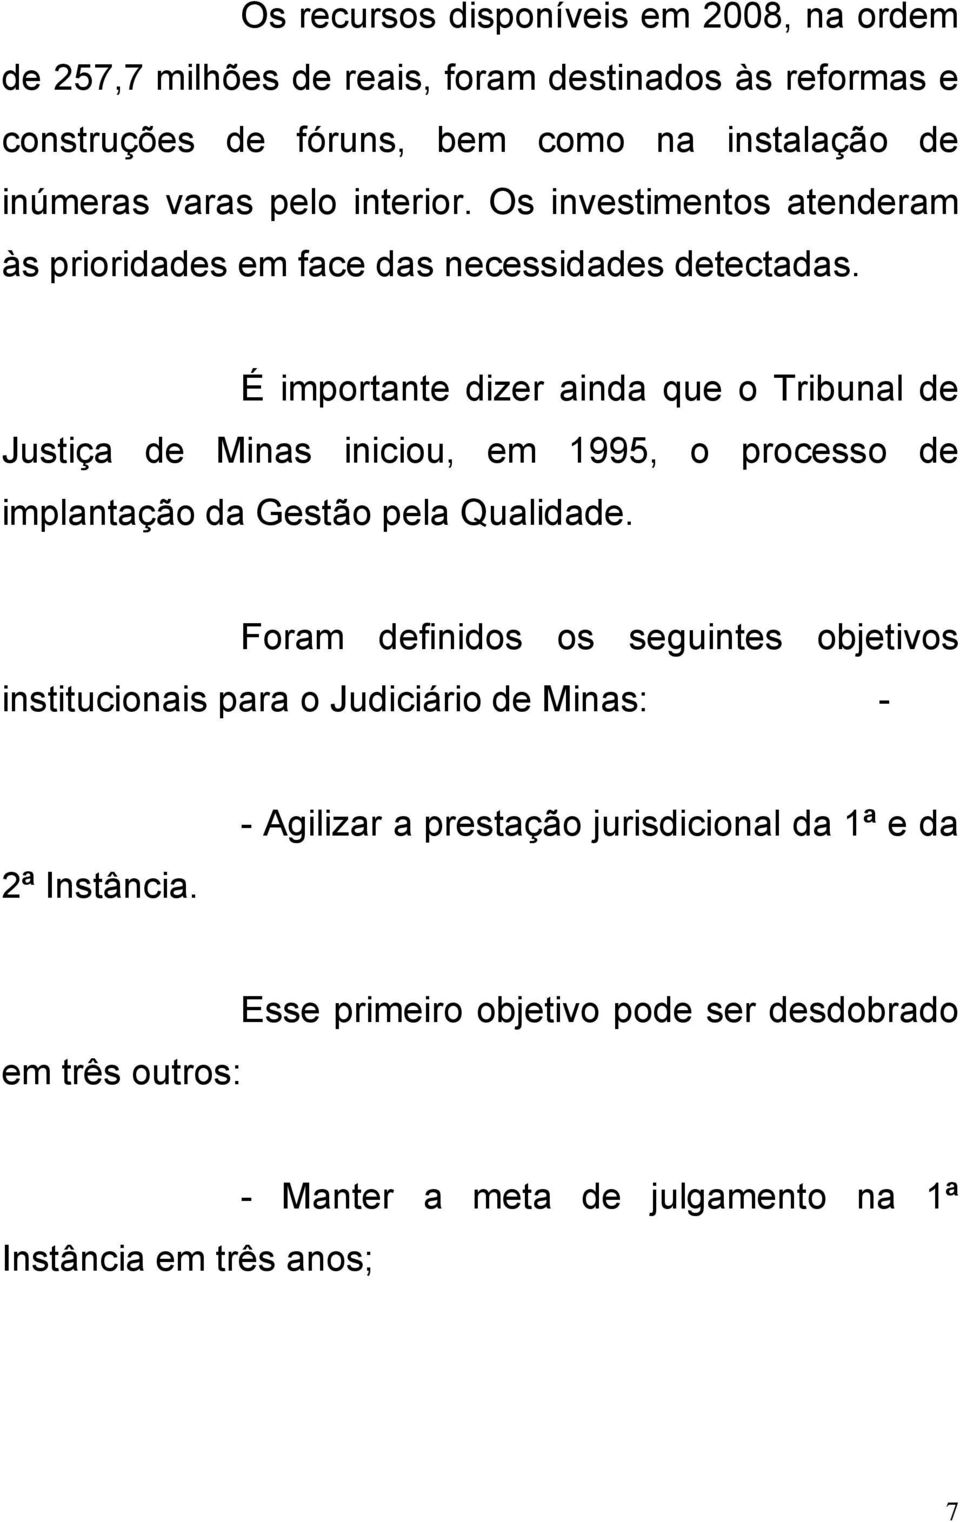 É importante dizer ainda que o Tribunal de Justiça de Minas iniciou, em 1995, o processo de implantação da Gestão pela Qualidade.